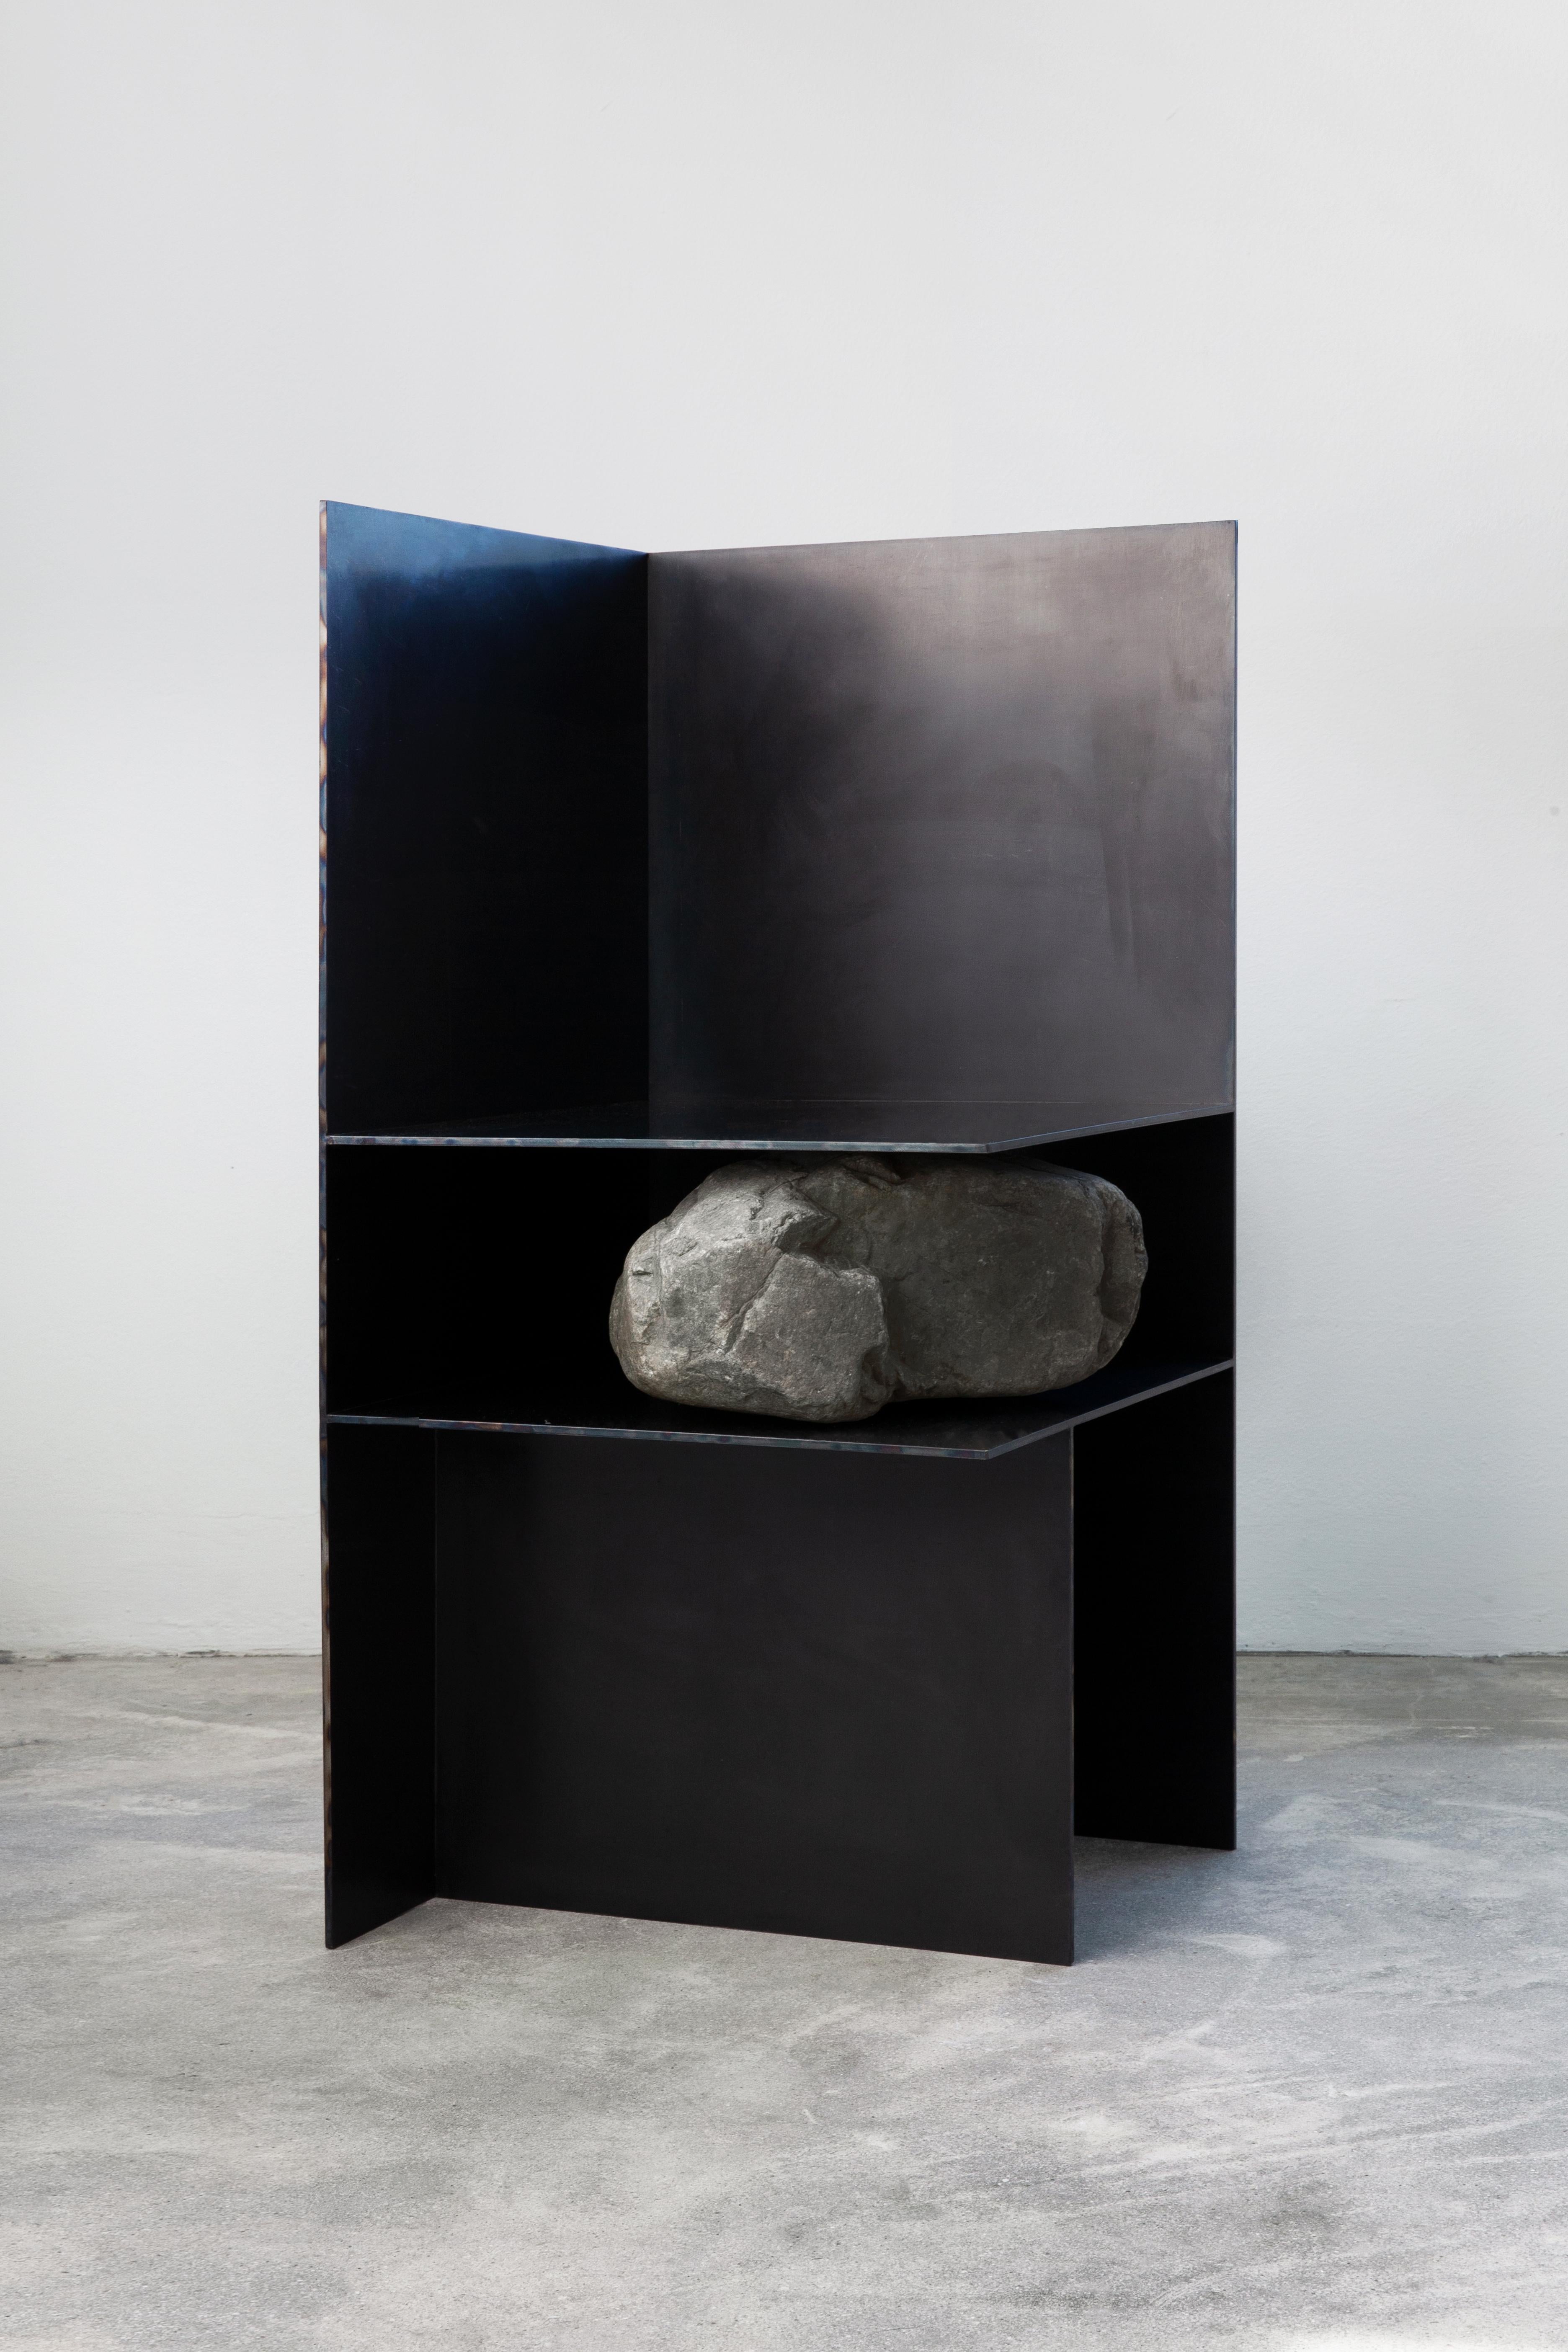 Proportionen des Stone Chair III von Lee Sisan
Abmessungen: B 40 x T 40 x H 80 cm
MATERIALIEN: Roheisen, Stahl, Naturstein.

Jedes Stück wird auf Bestellung aus Natursteinen gefertigt, so dass das Design etwas variieren kann.

